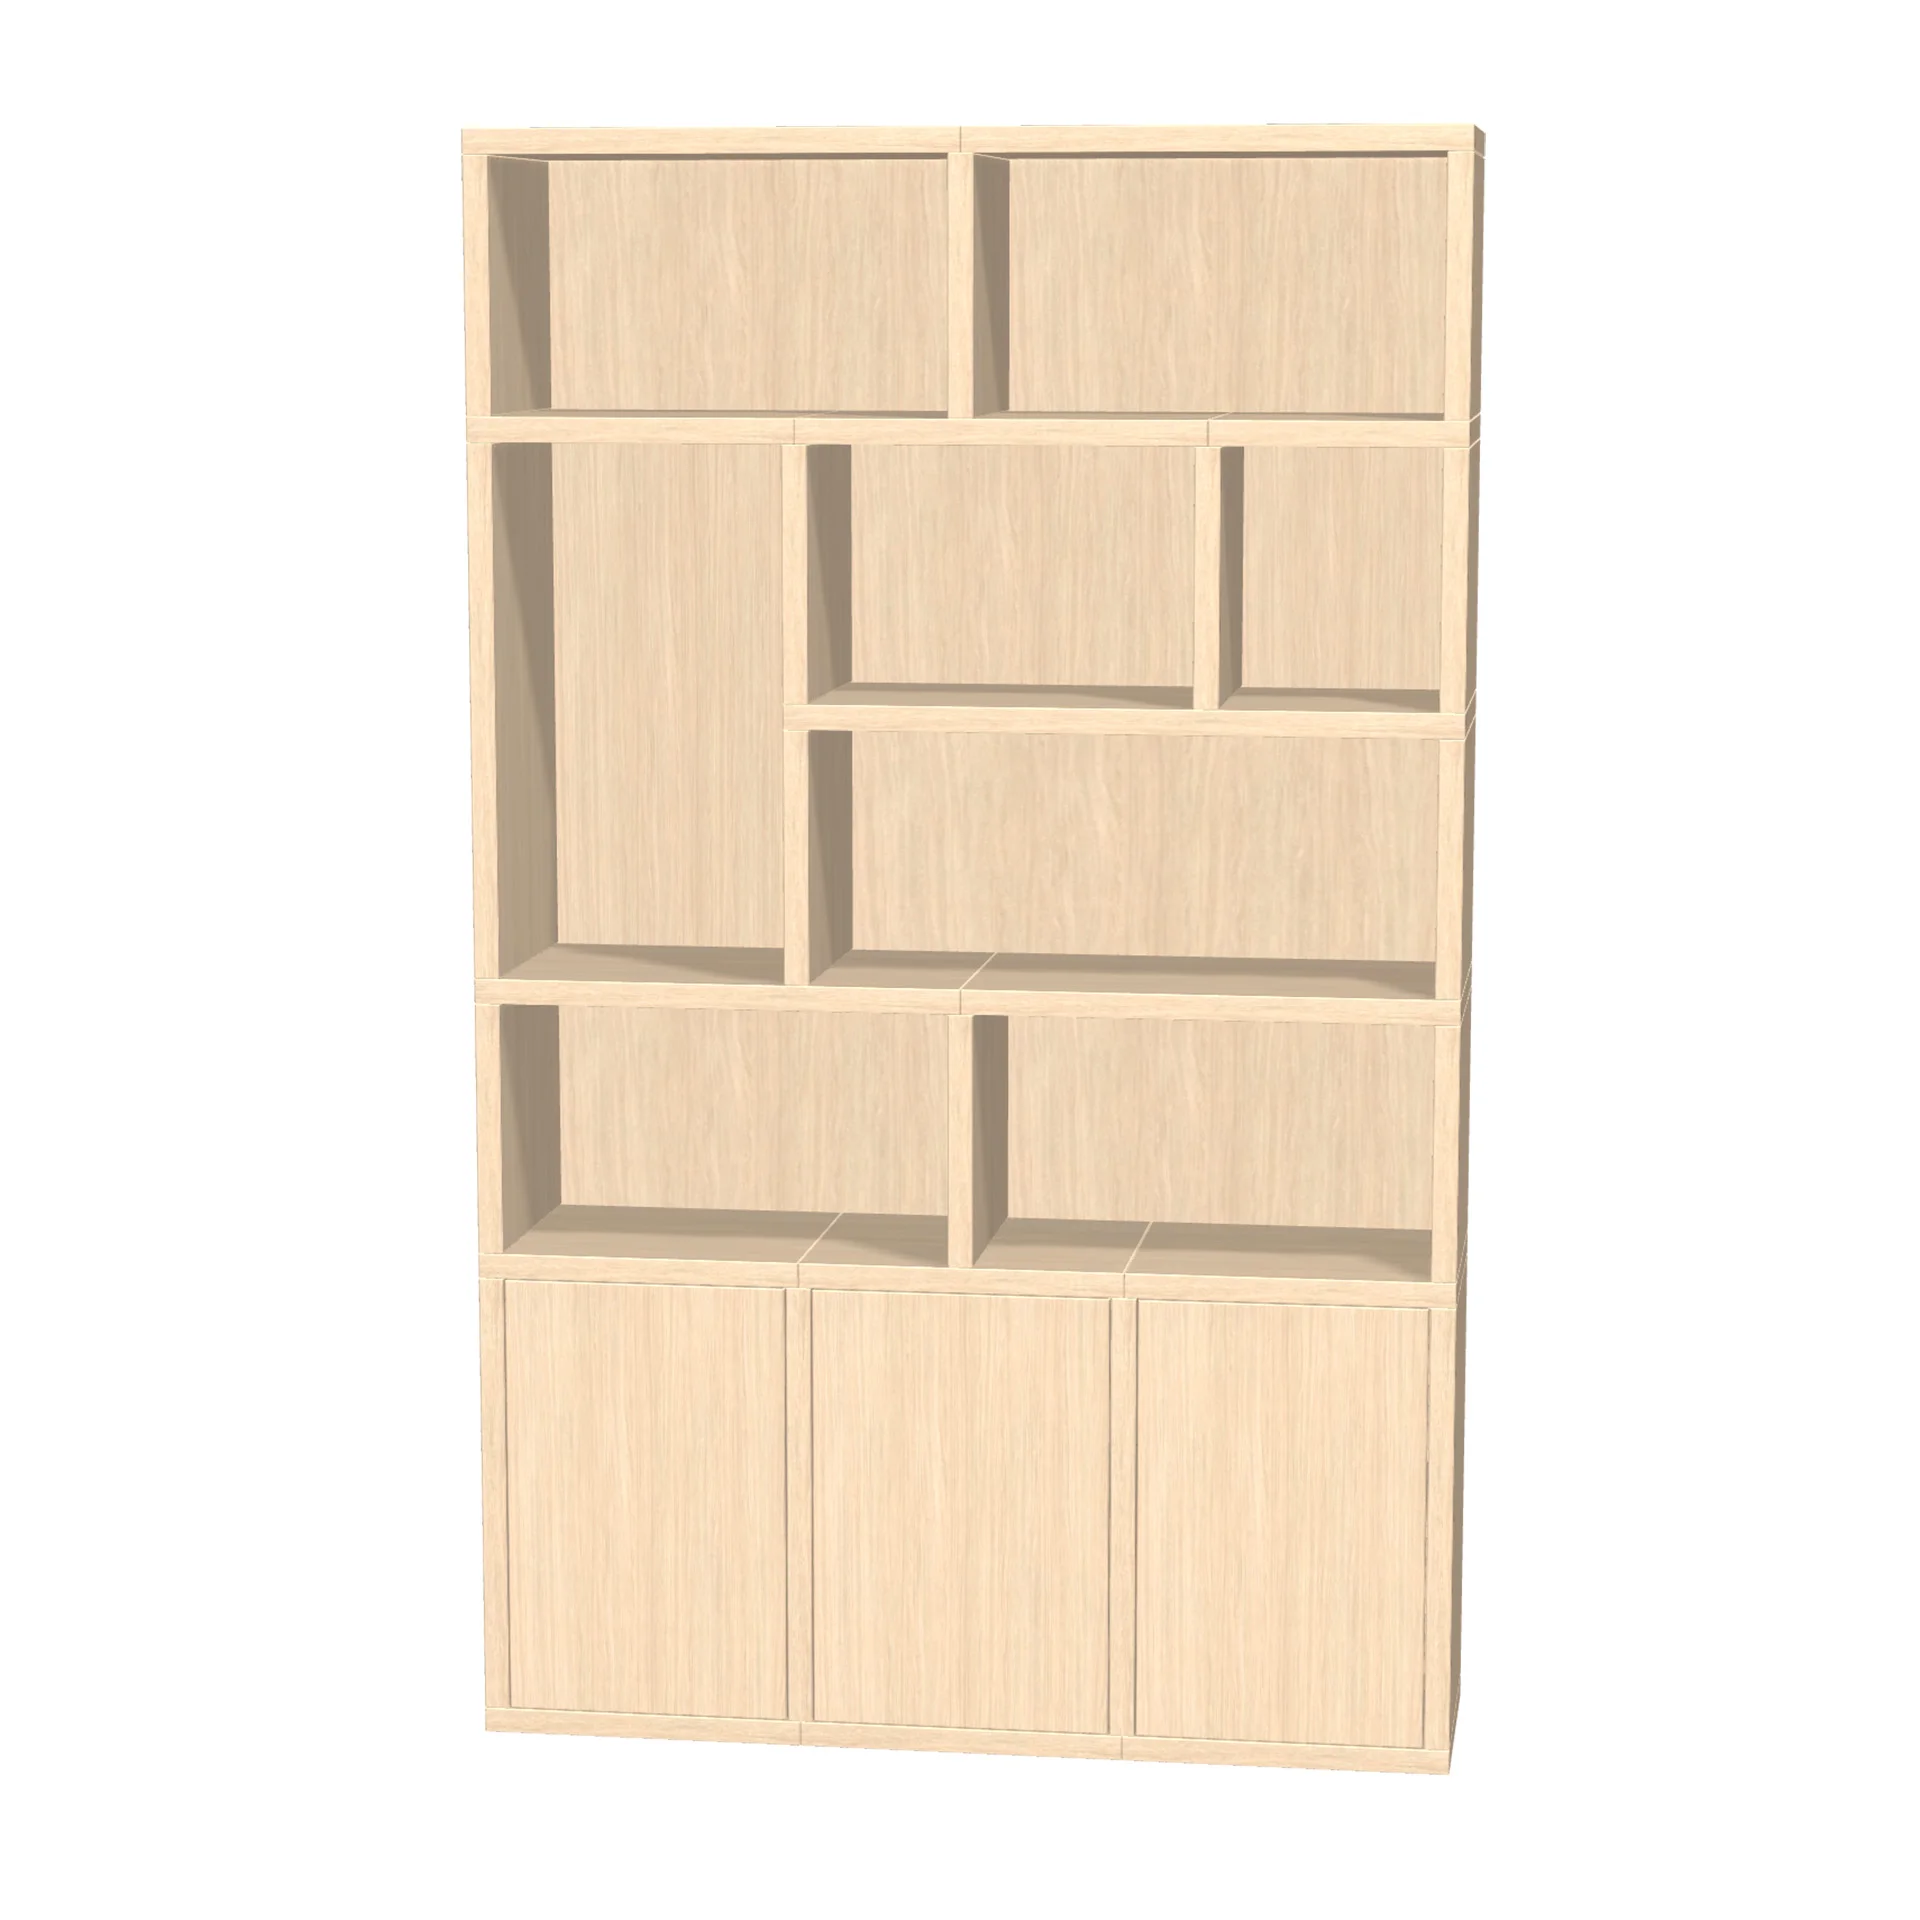 TSFC009 in natural oak furniture board